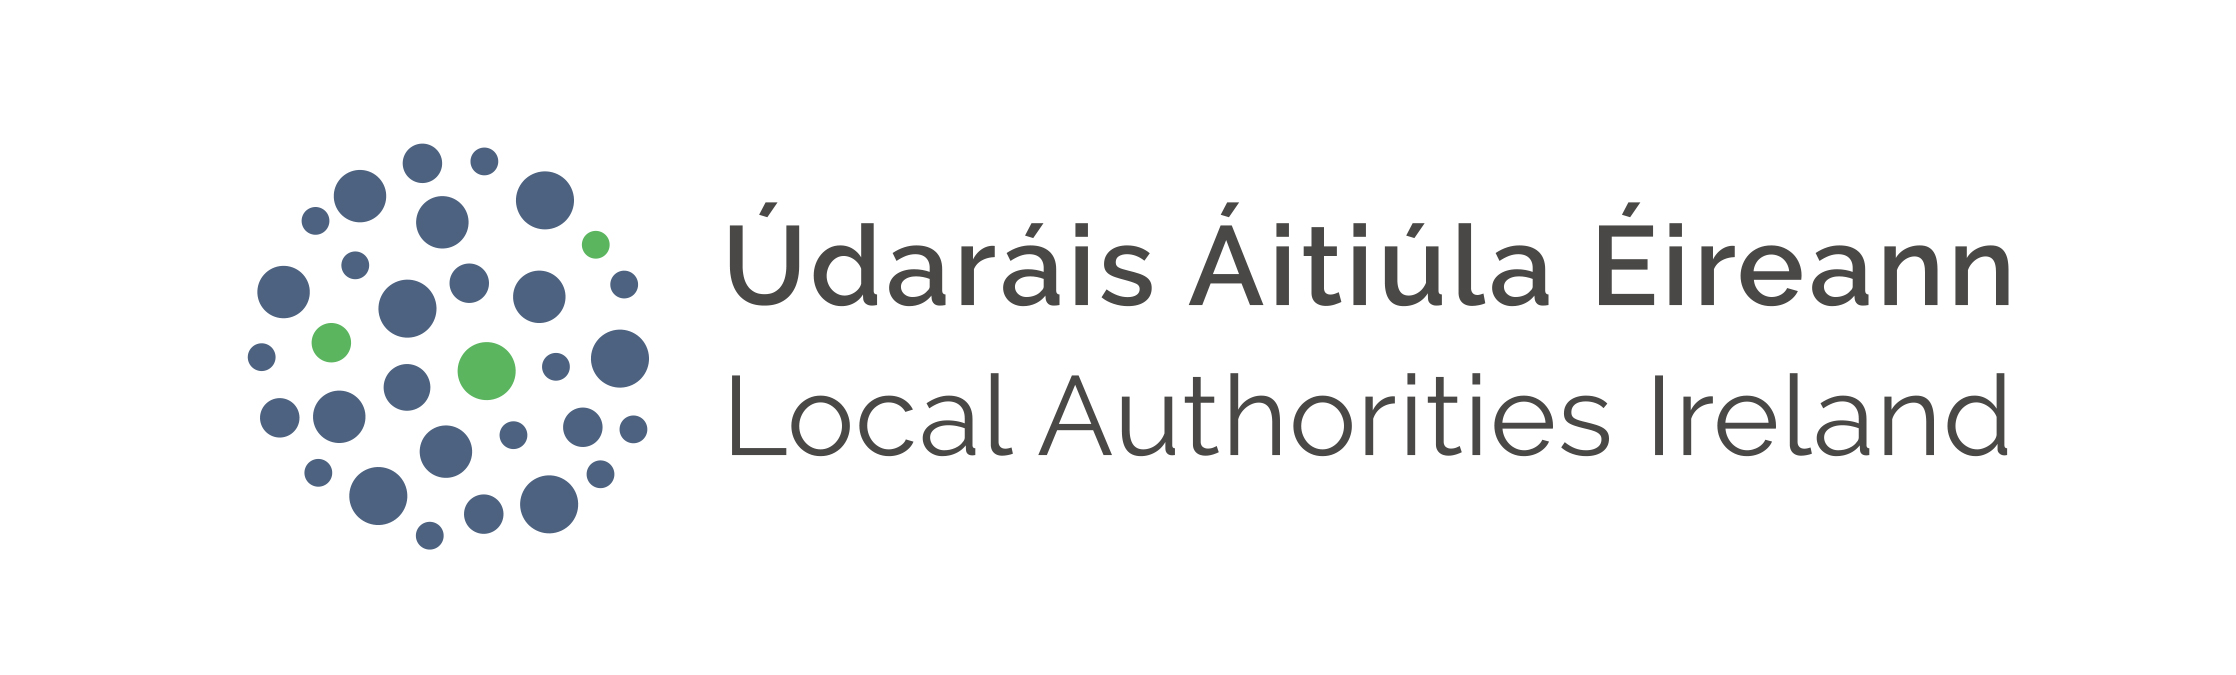 Local Authorities Ireland